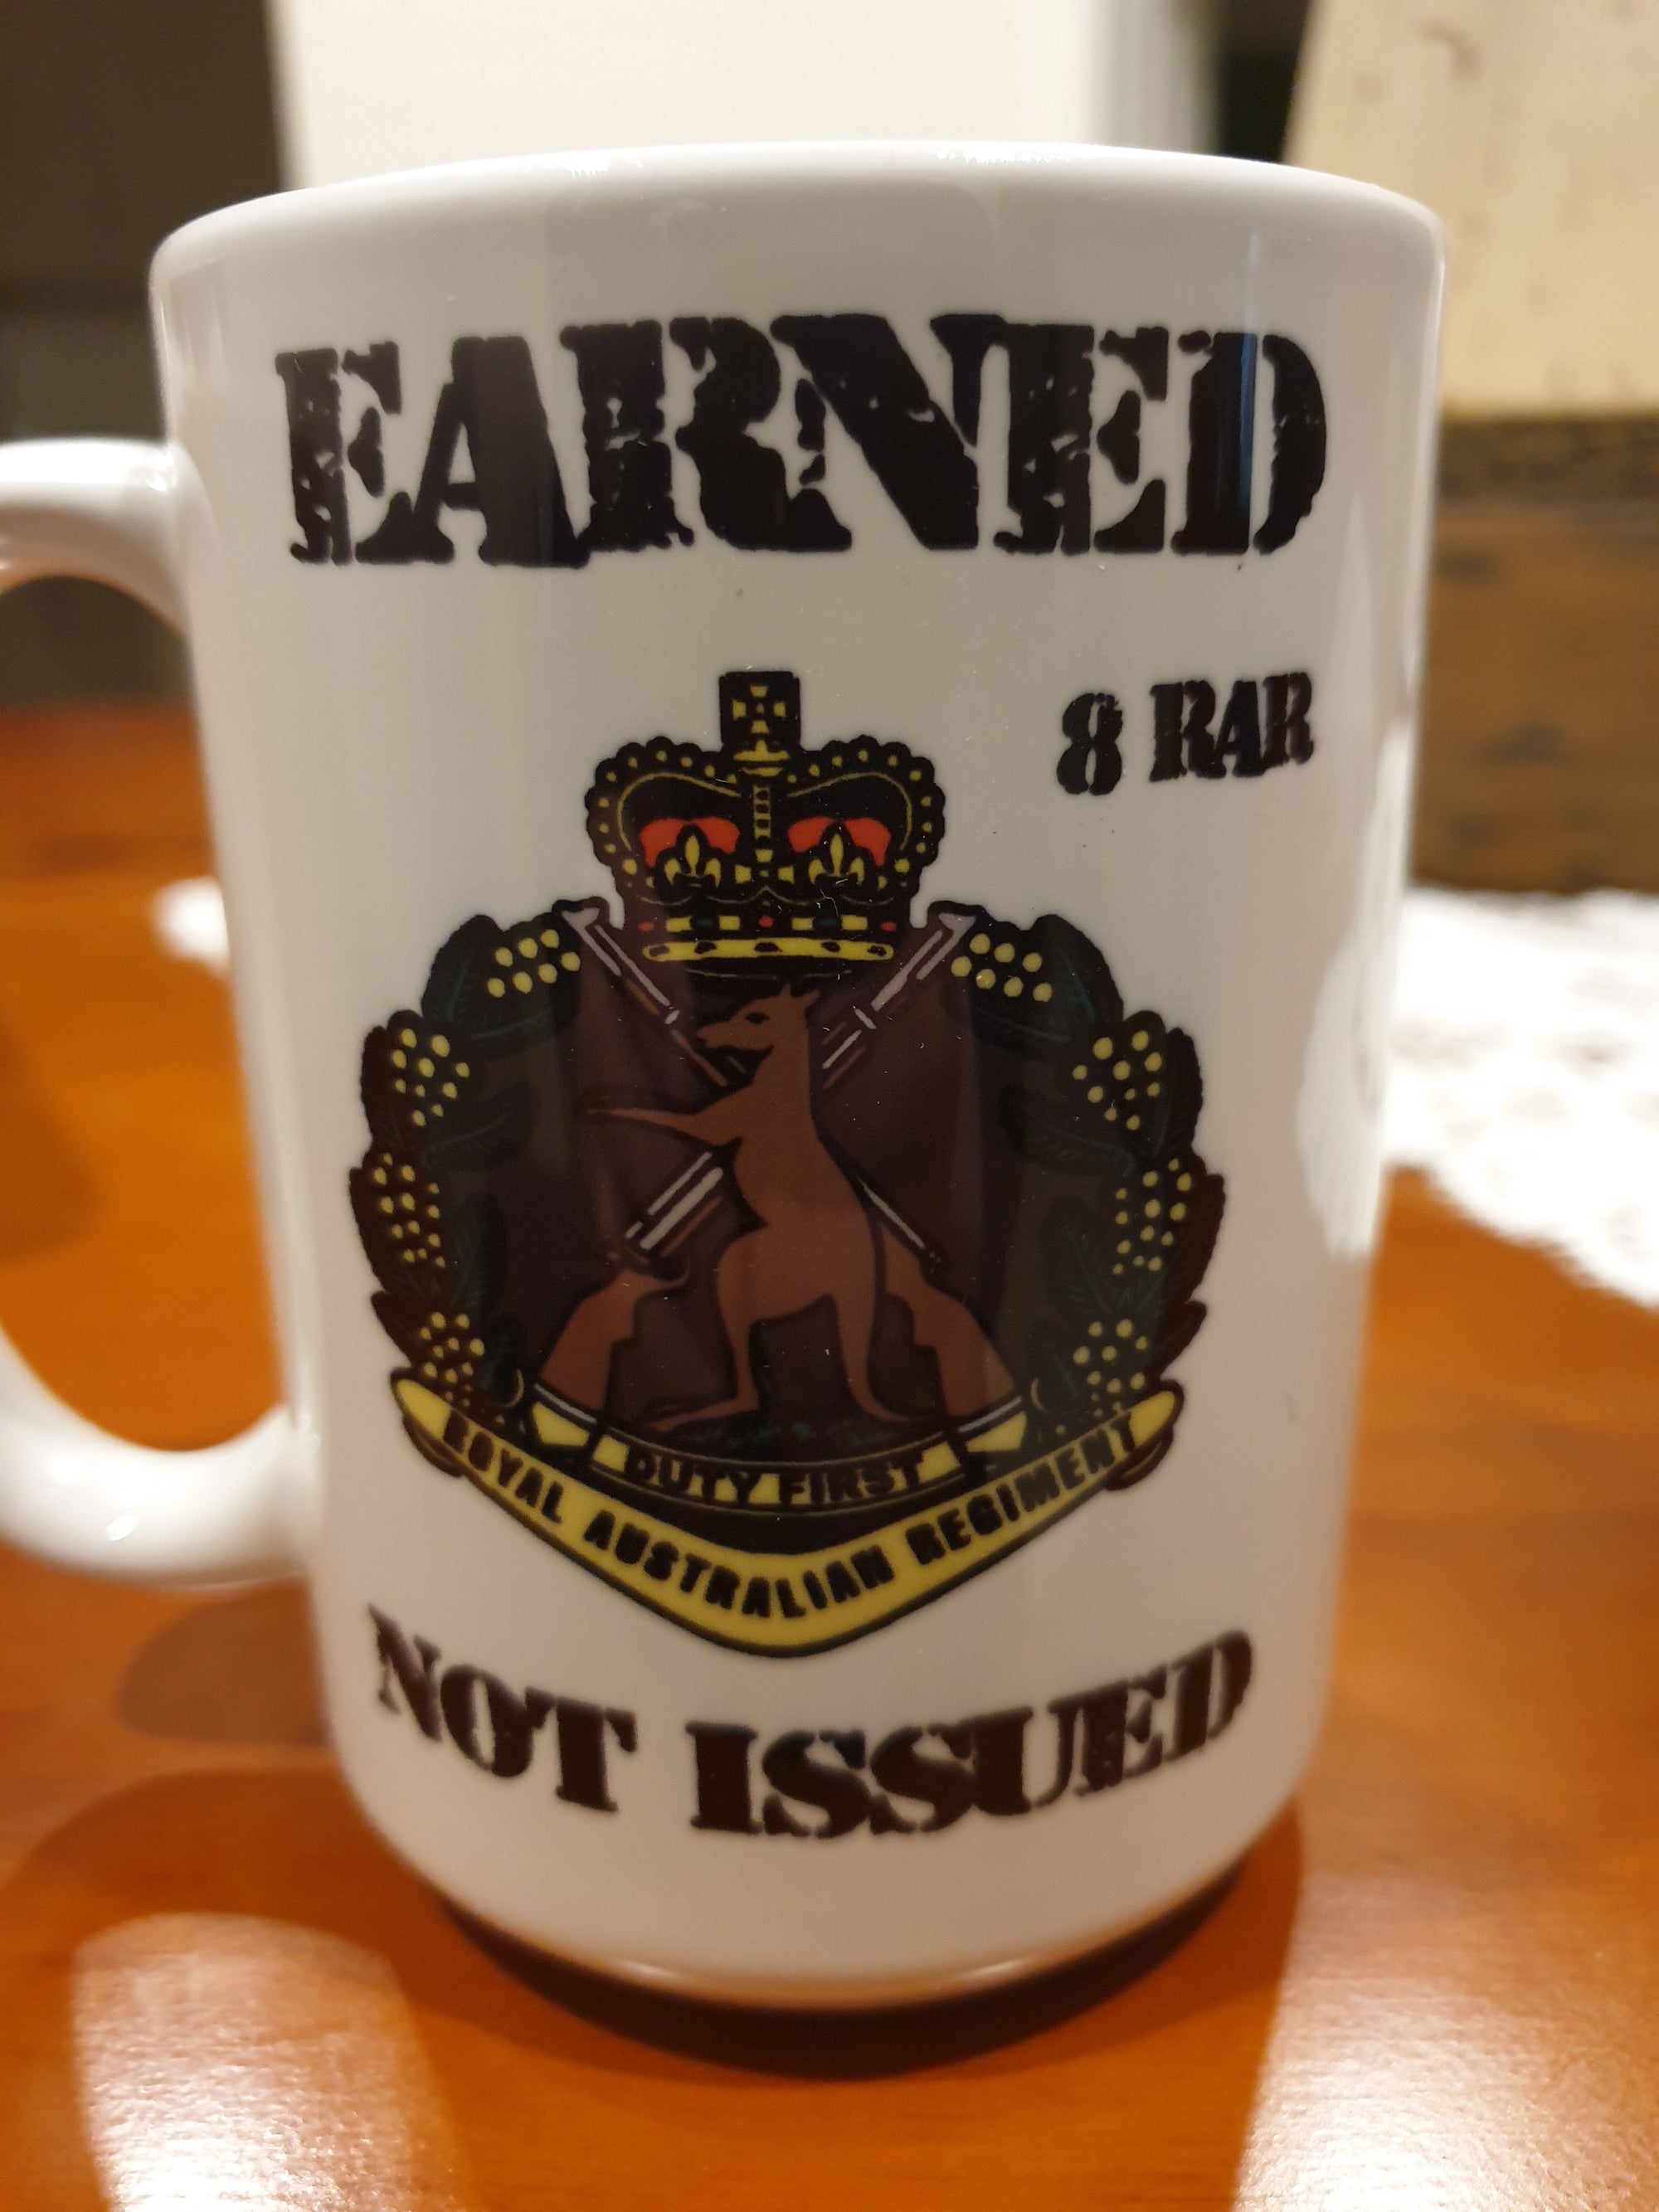 15 OZ  8 RAR Earned not issued  mug